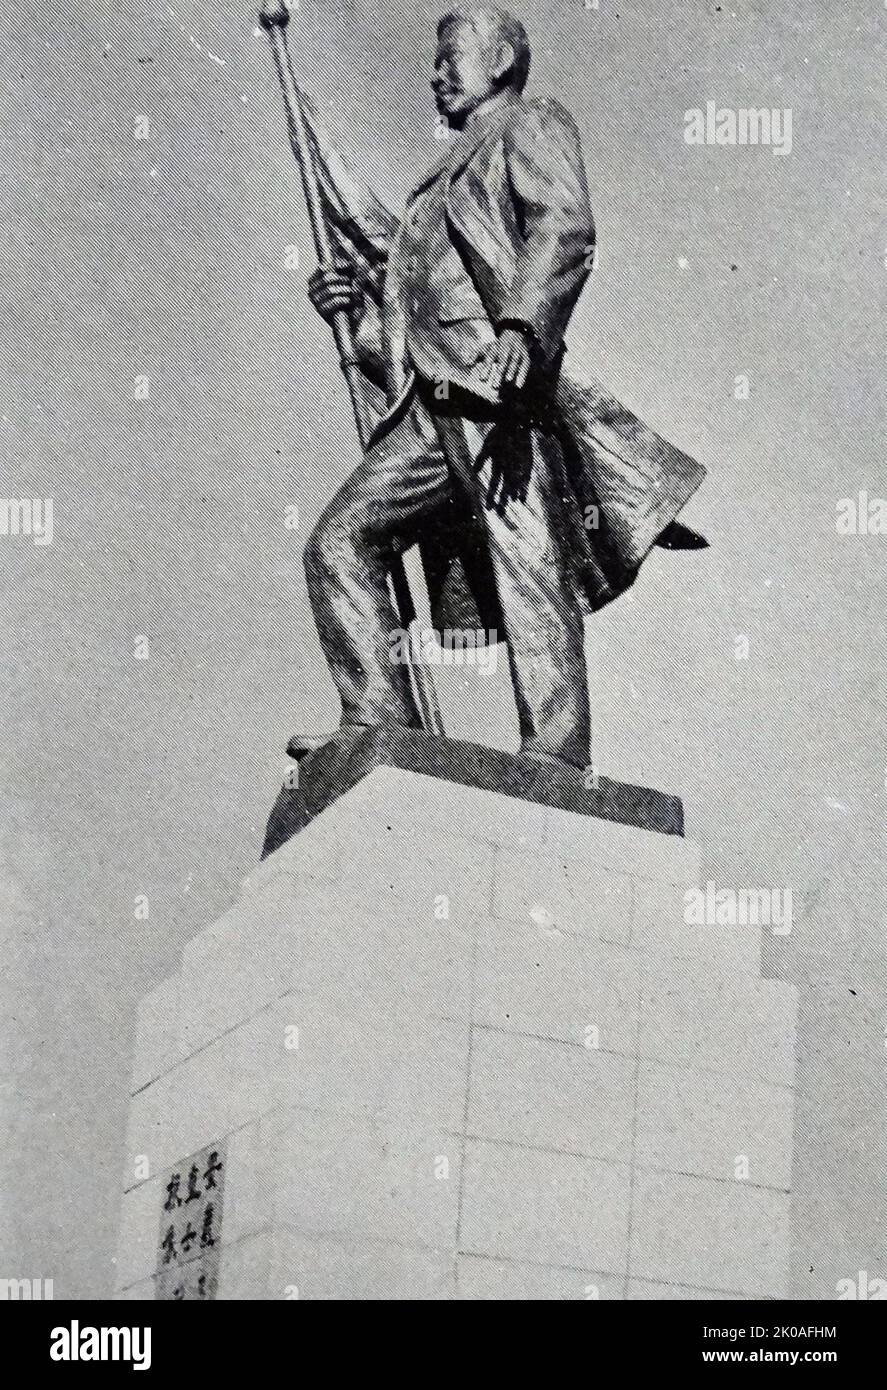 Statue eines Jung-geun (1879 - 1910), koreanisch-Unabhängigkeitsaktivisten und Nationalisten. Berühmt für seine Attentate auf Ito Hirobumi, den ersten japanischen Premierminister. Am 26. Oktober 1909 ermordete er Ito Hirobumi, den ersten Resident-General von Korea, einen vierfachen Premierminister von Japan und dann den Präsidenten des Privy Council von Japan. Statue von Kim Kyeong-Seung (1915-1992) im Jahr 1959. Stockfoto